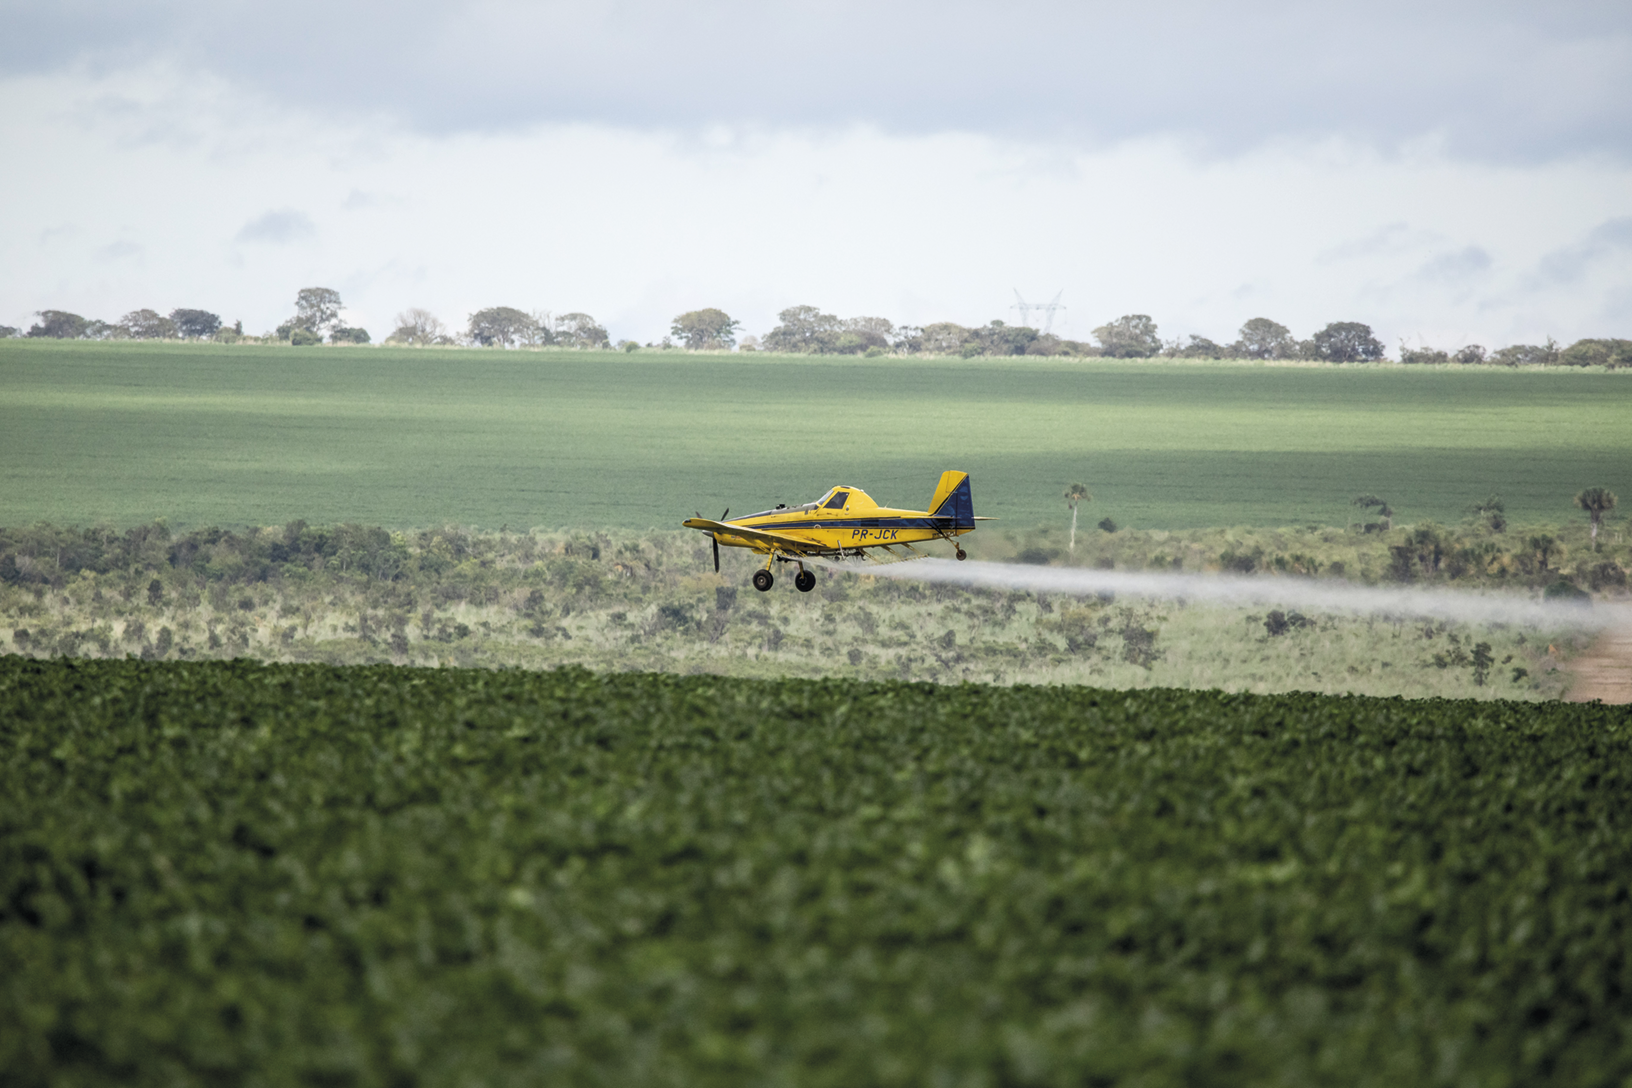 Fotografia. Um pequeno avião amarelo sobrevoando uma plantação. Há um jato sendo despejado dele. Ao fundo, vasto campo aberto e árvores.